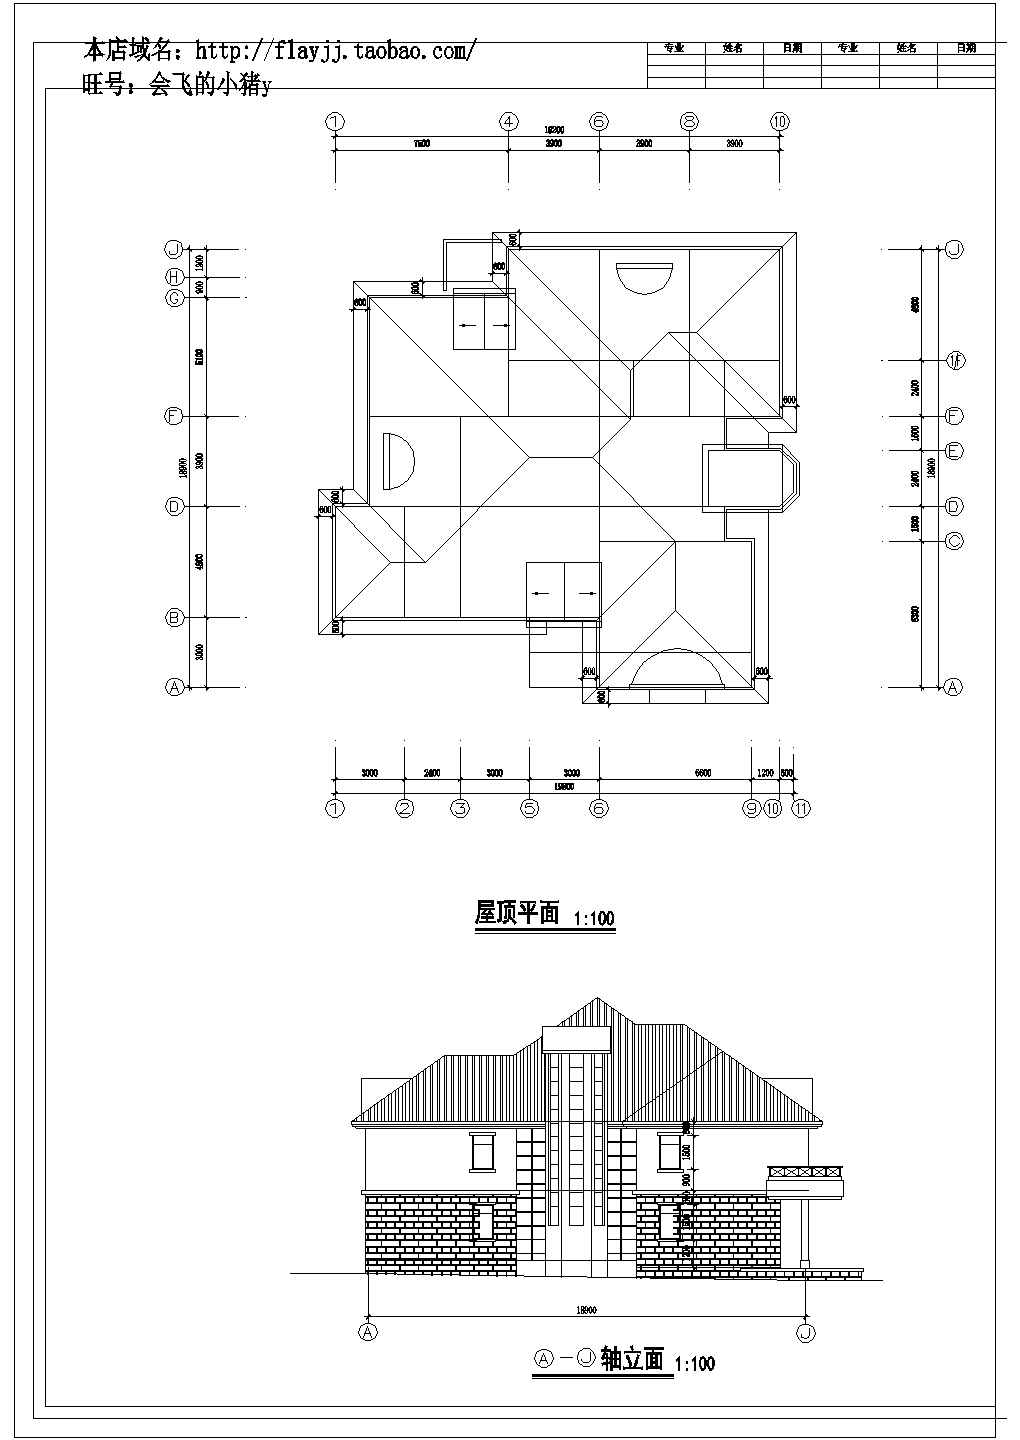  2+1阁楼层595平米大单体别墅建筑设计图【平立剖】.cad